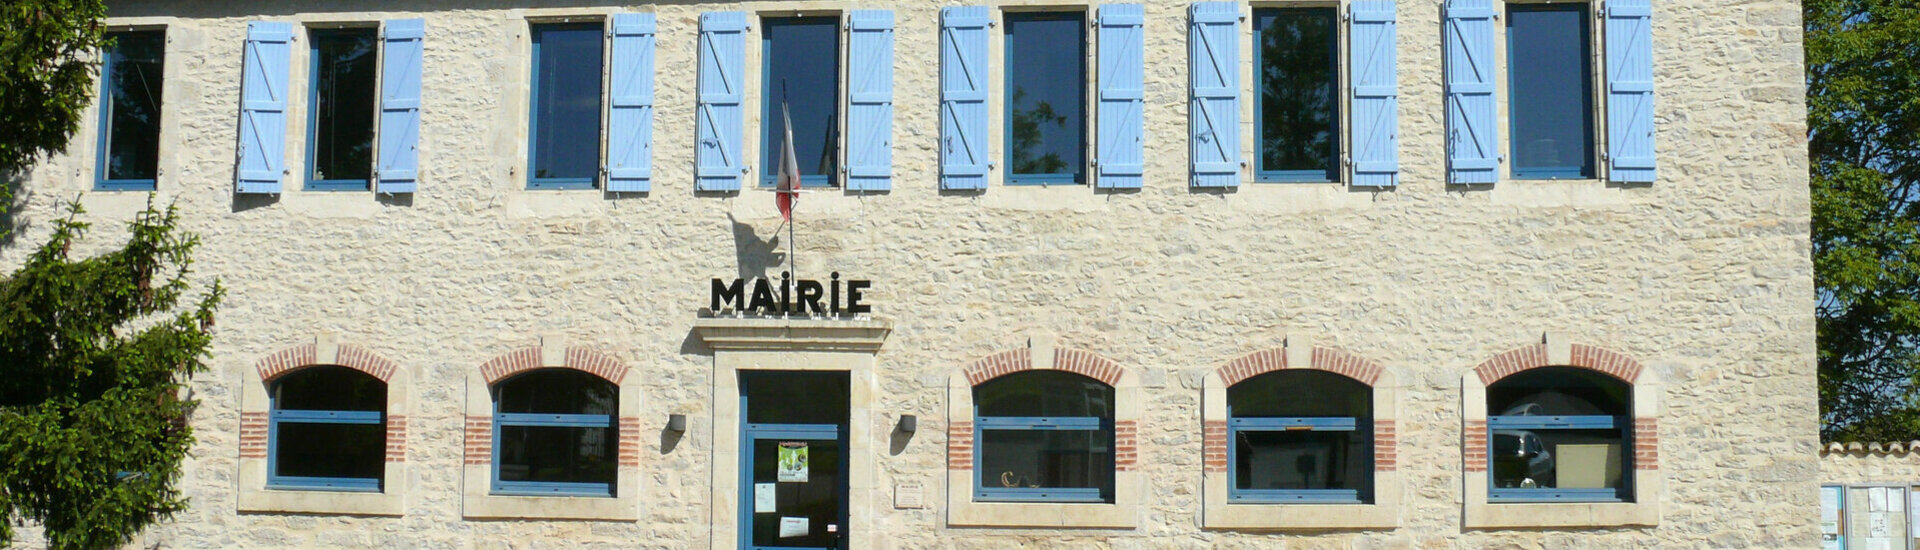 Conseil Municipal Maire Elus Le Montat Lot